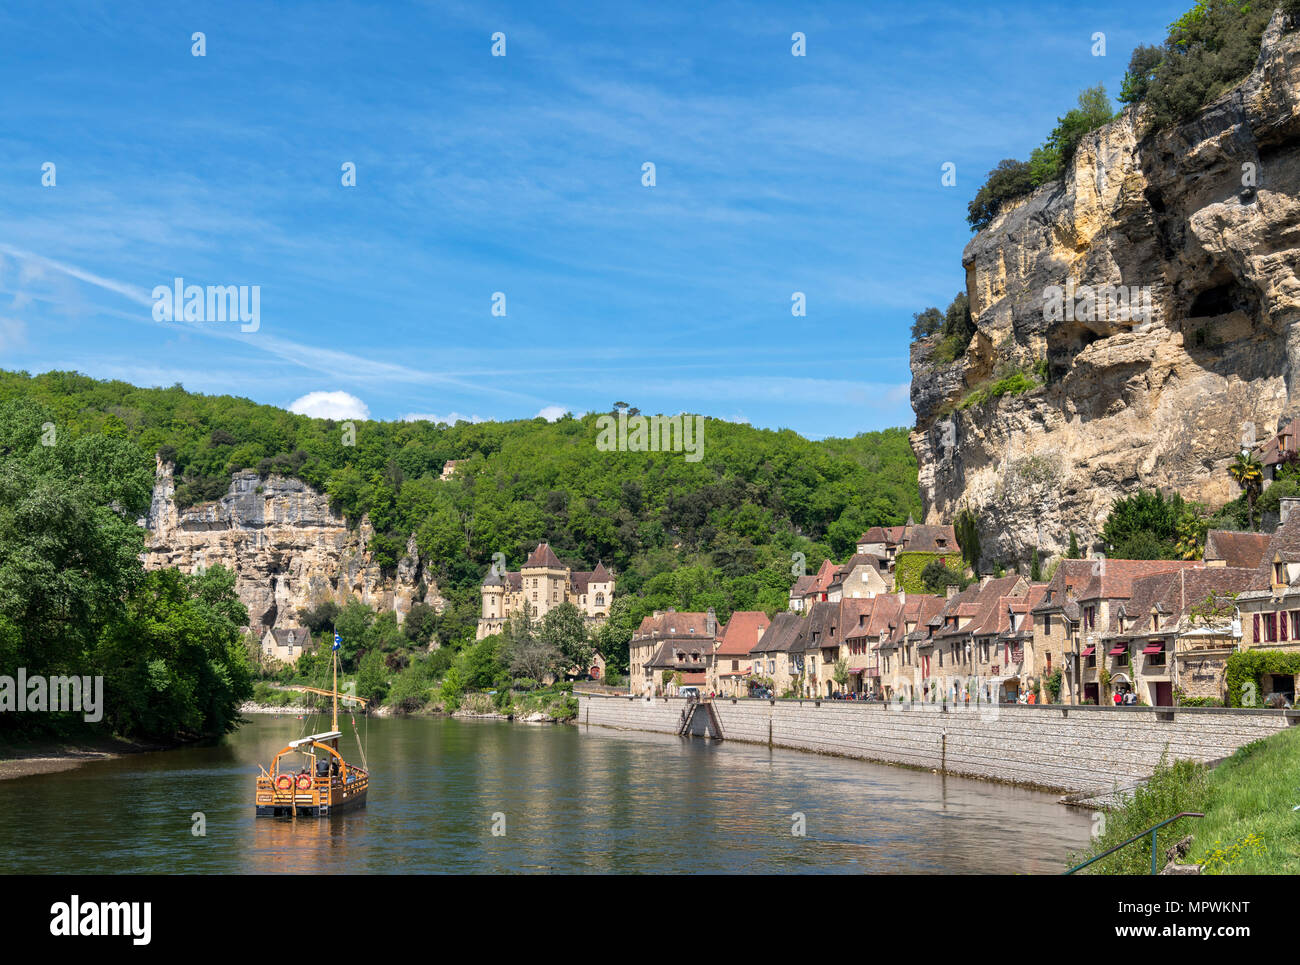 Excursion boat on the River Dordogne in La Roque Gageac, Dordogne, France Stock Photo